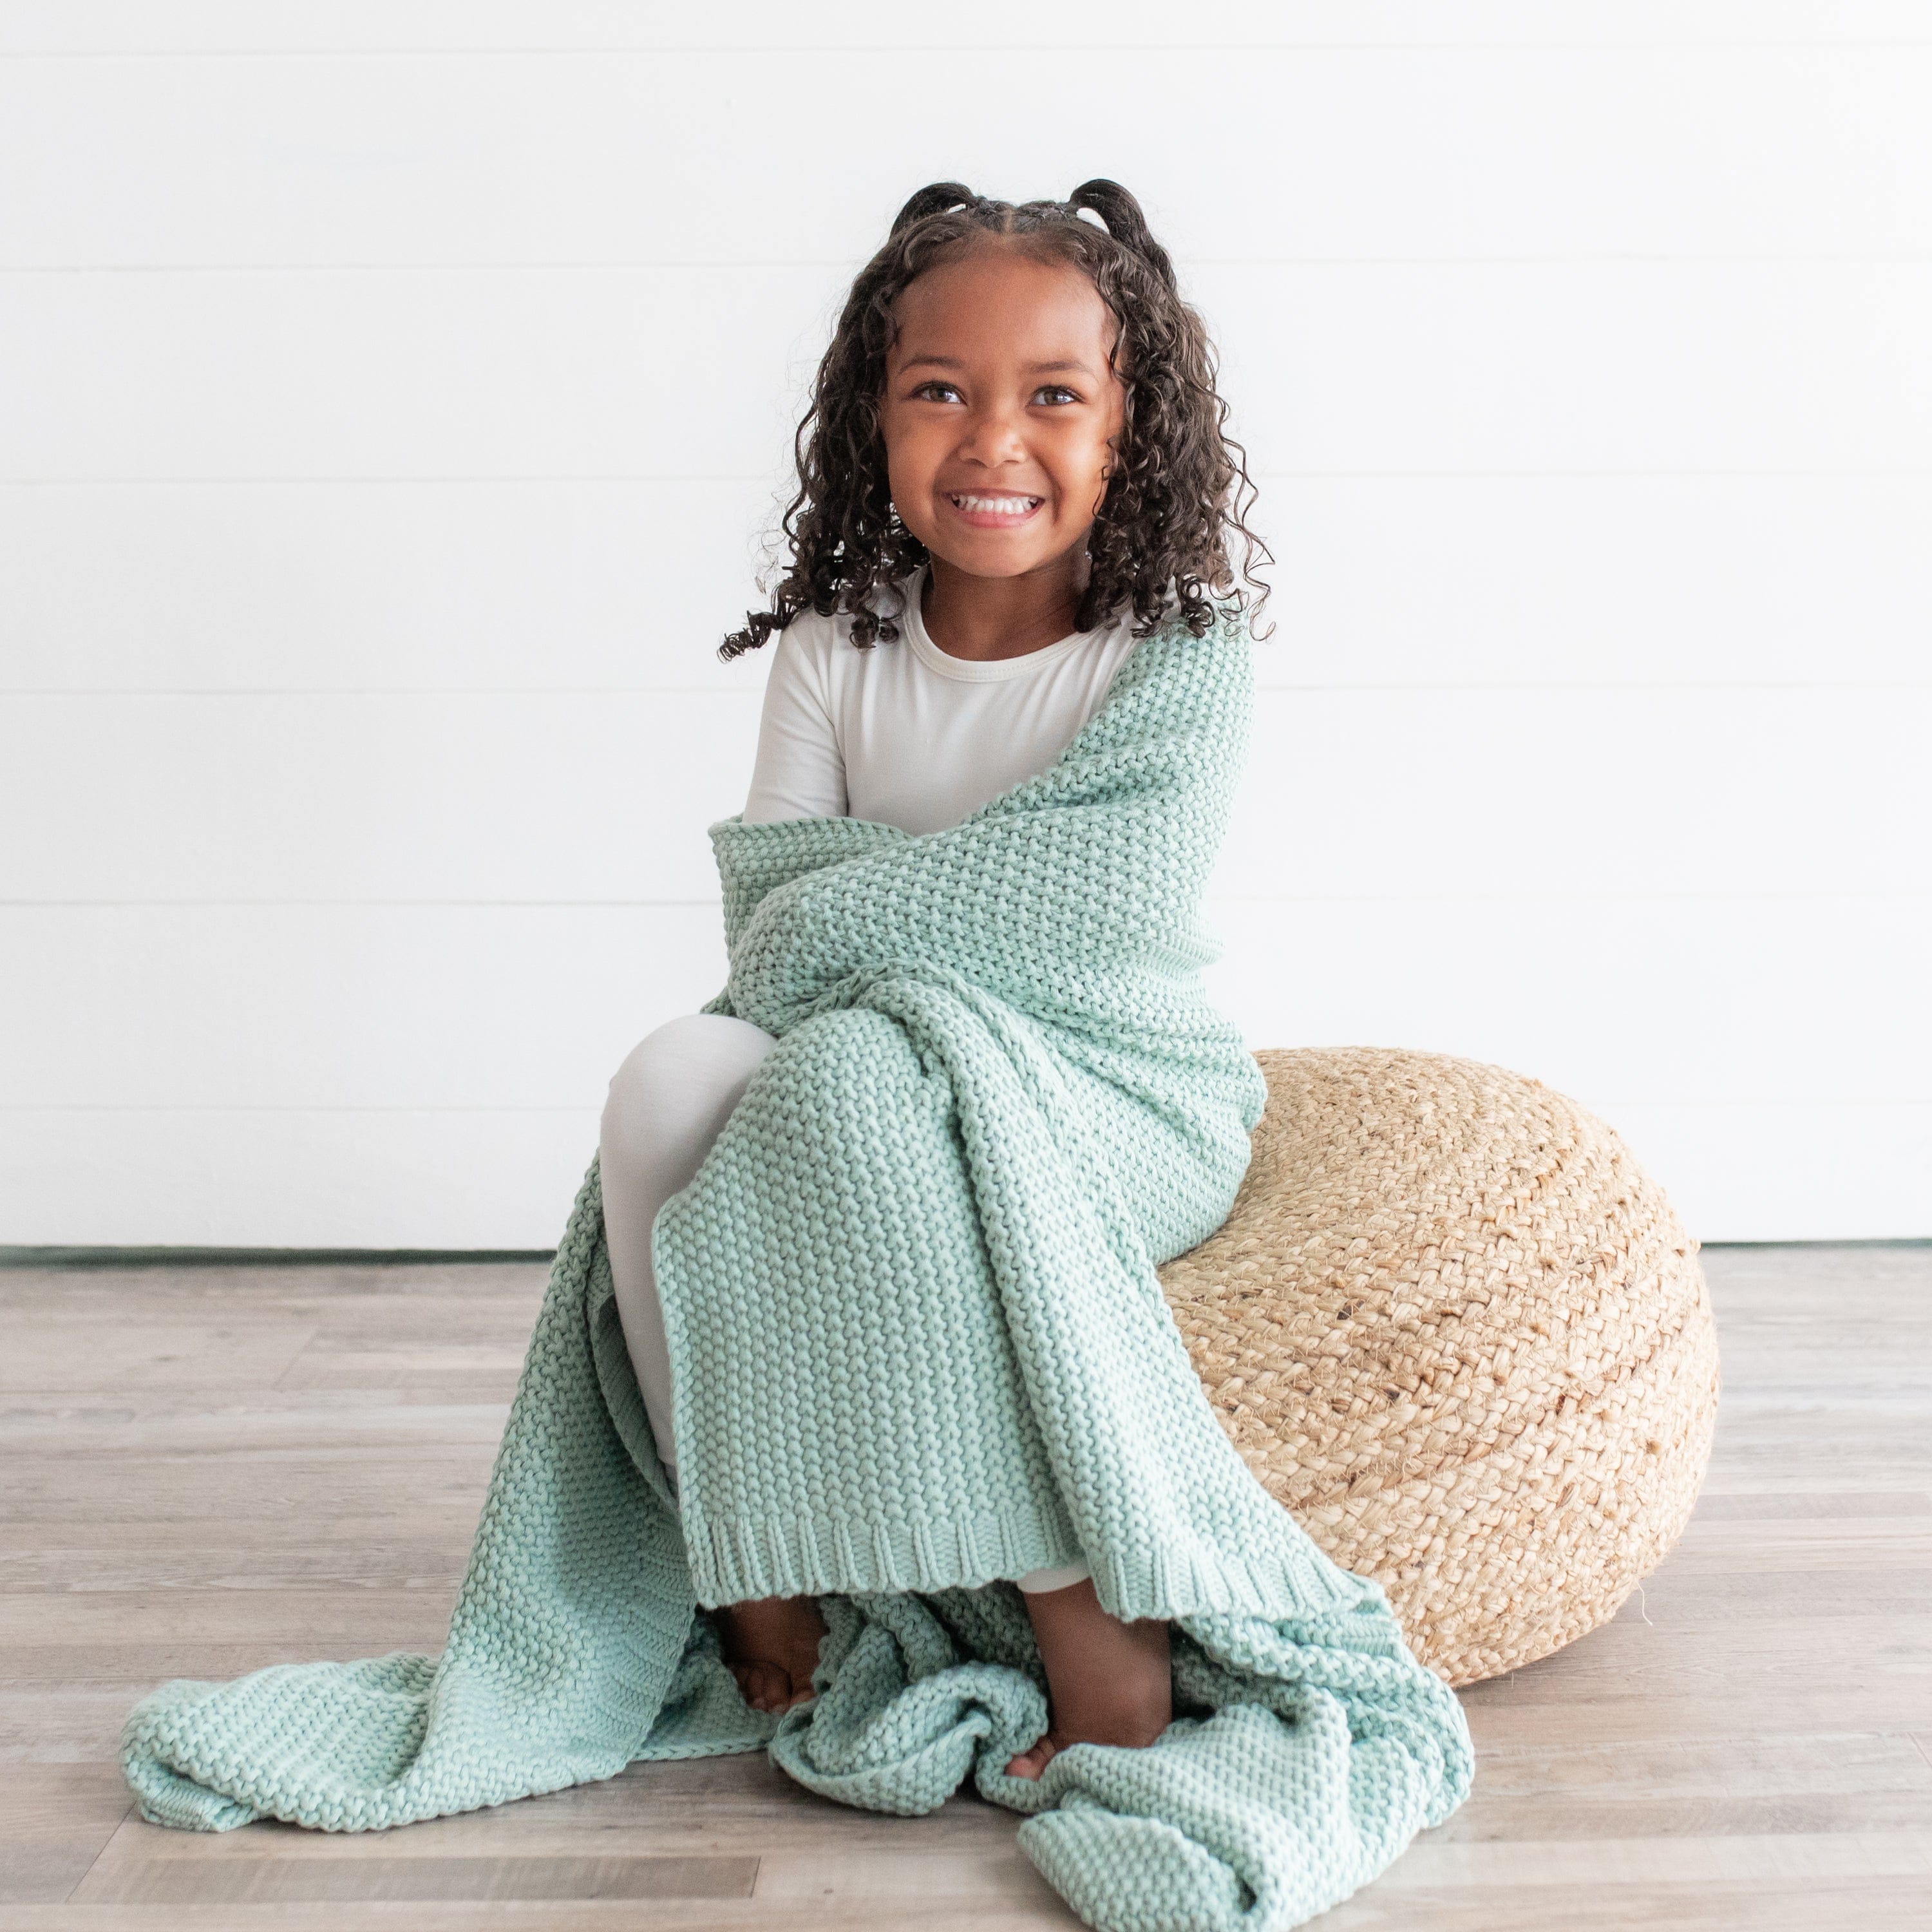 Wonder Nation Toddler Girl Knit Leggings, 3-Pack, Sizes 2T-5T